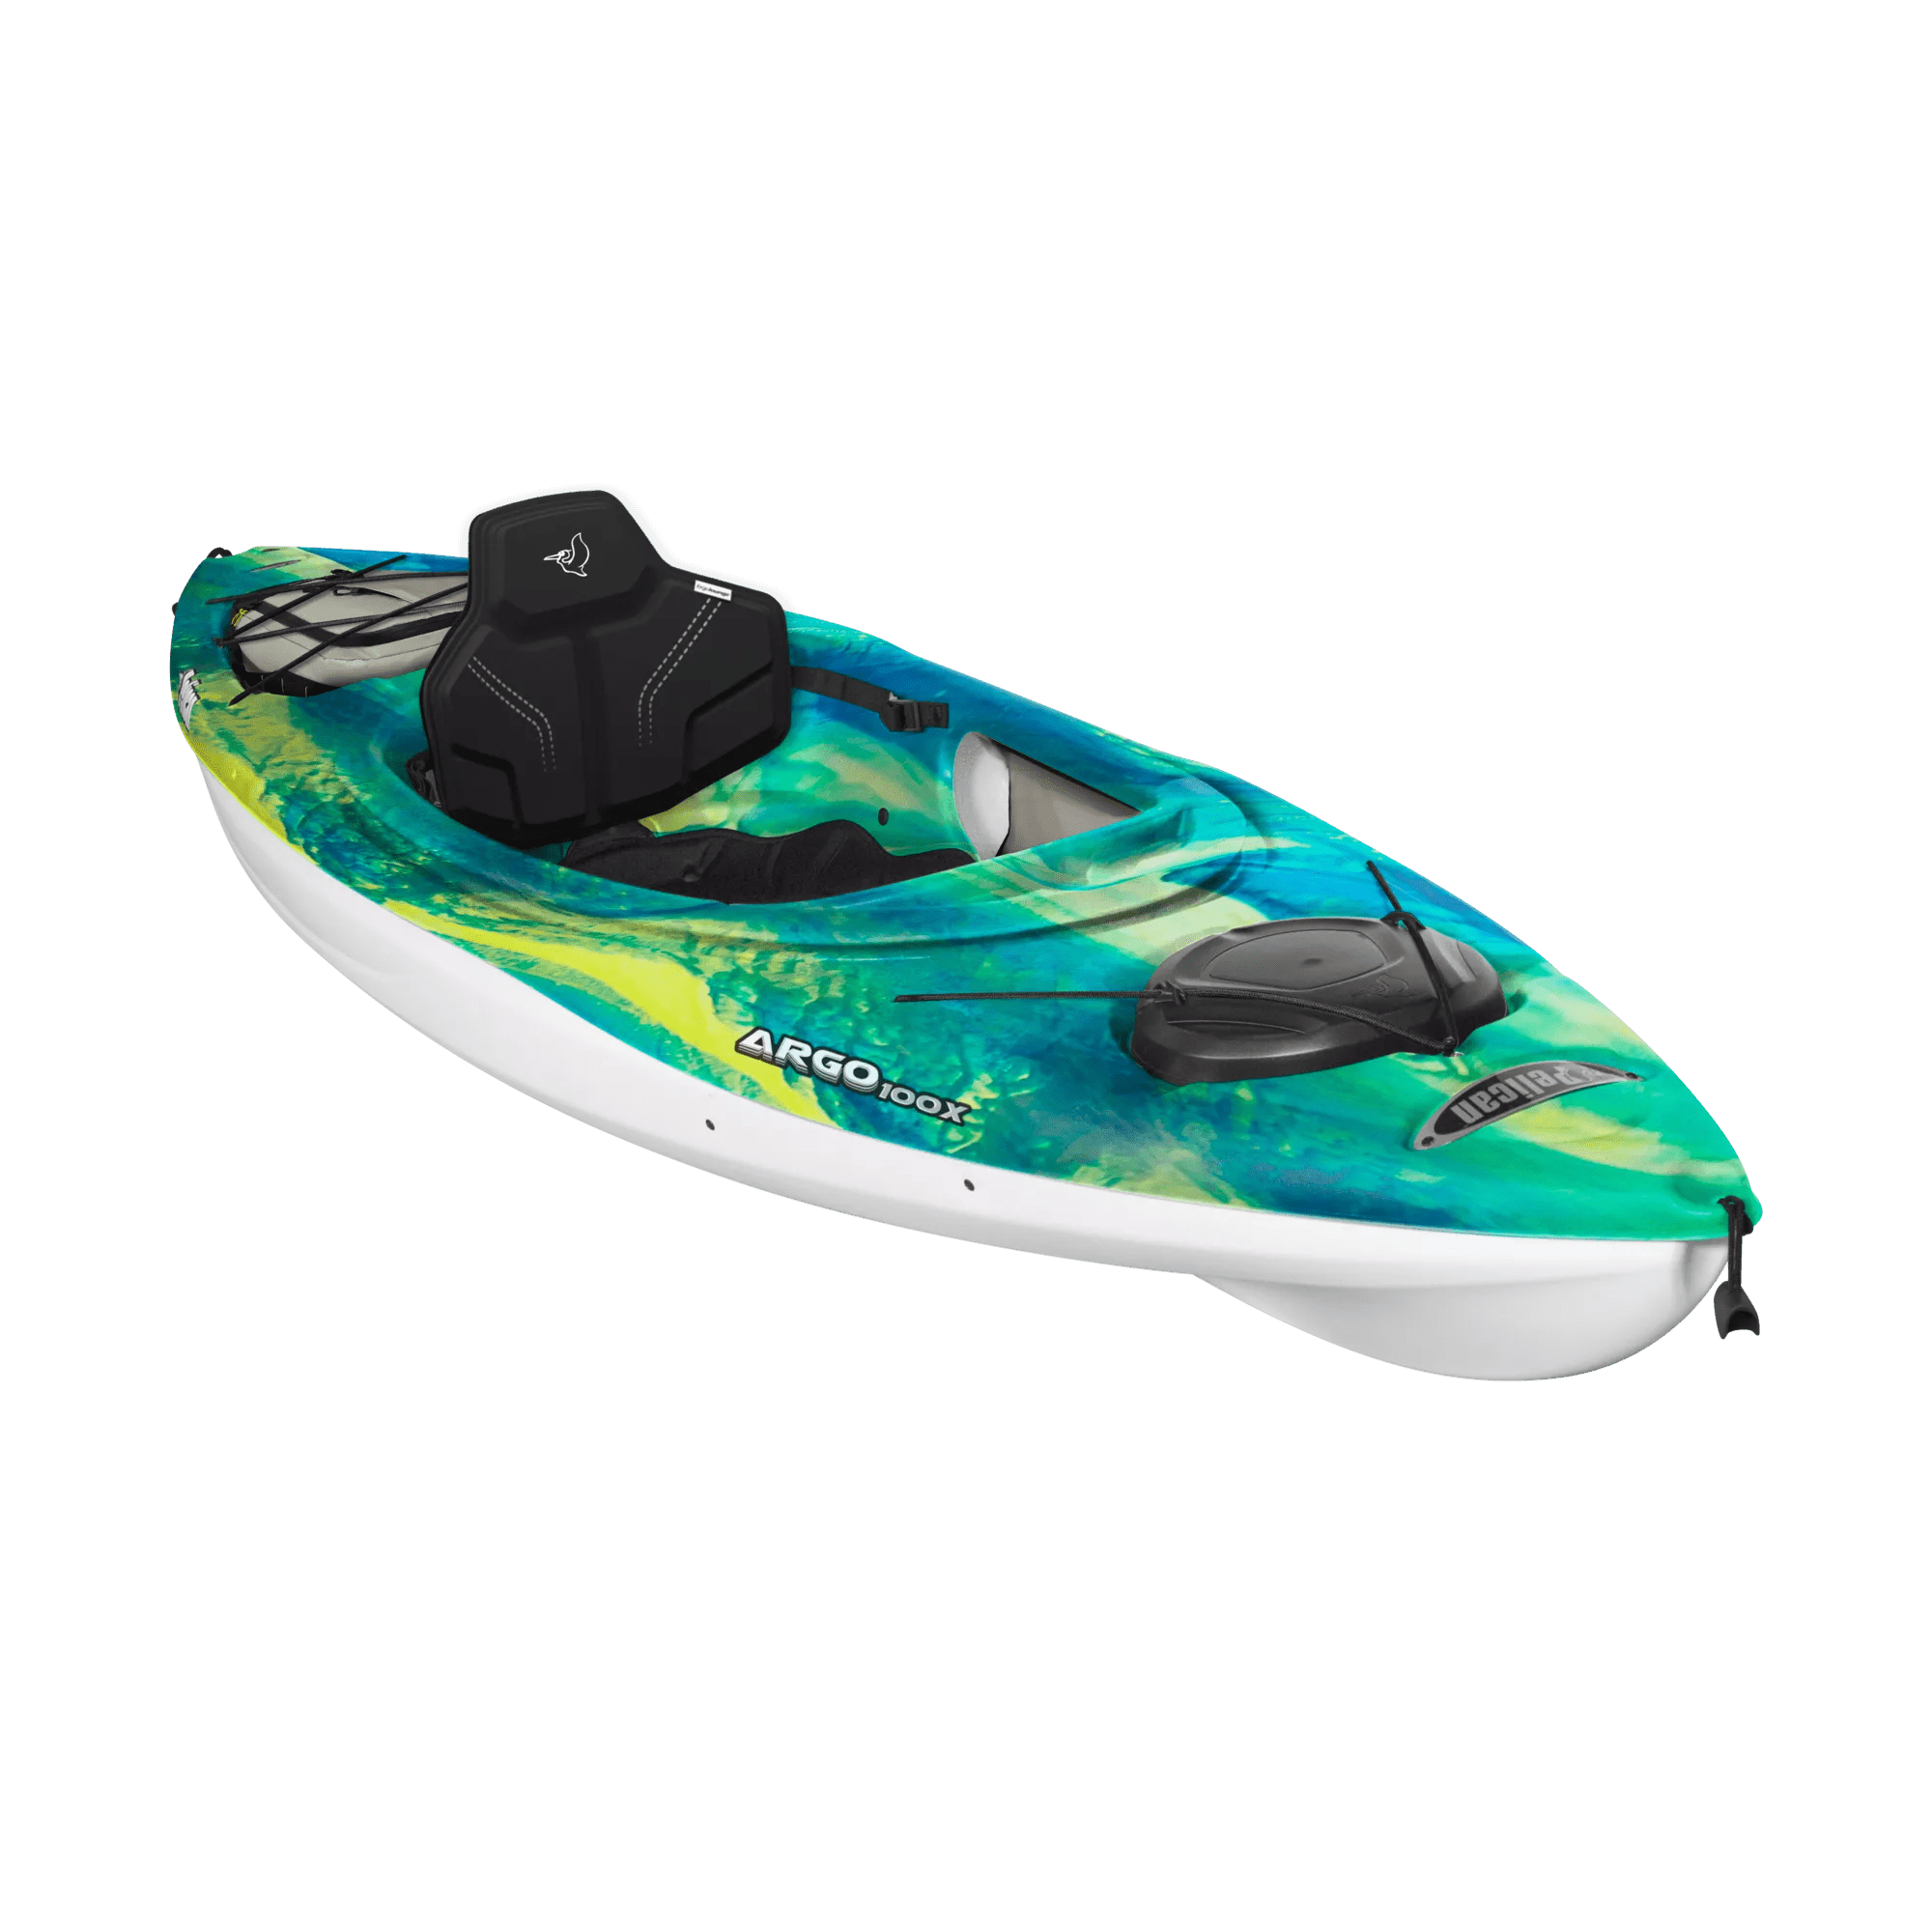 PELICAN - Argo 100X EXO Recreational Kayak - Grey - KFF10P101-00 - ISO 